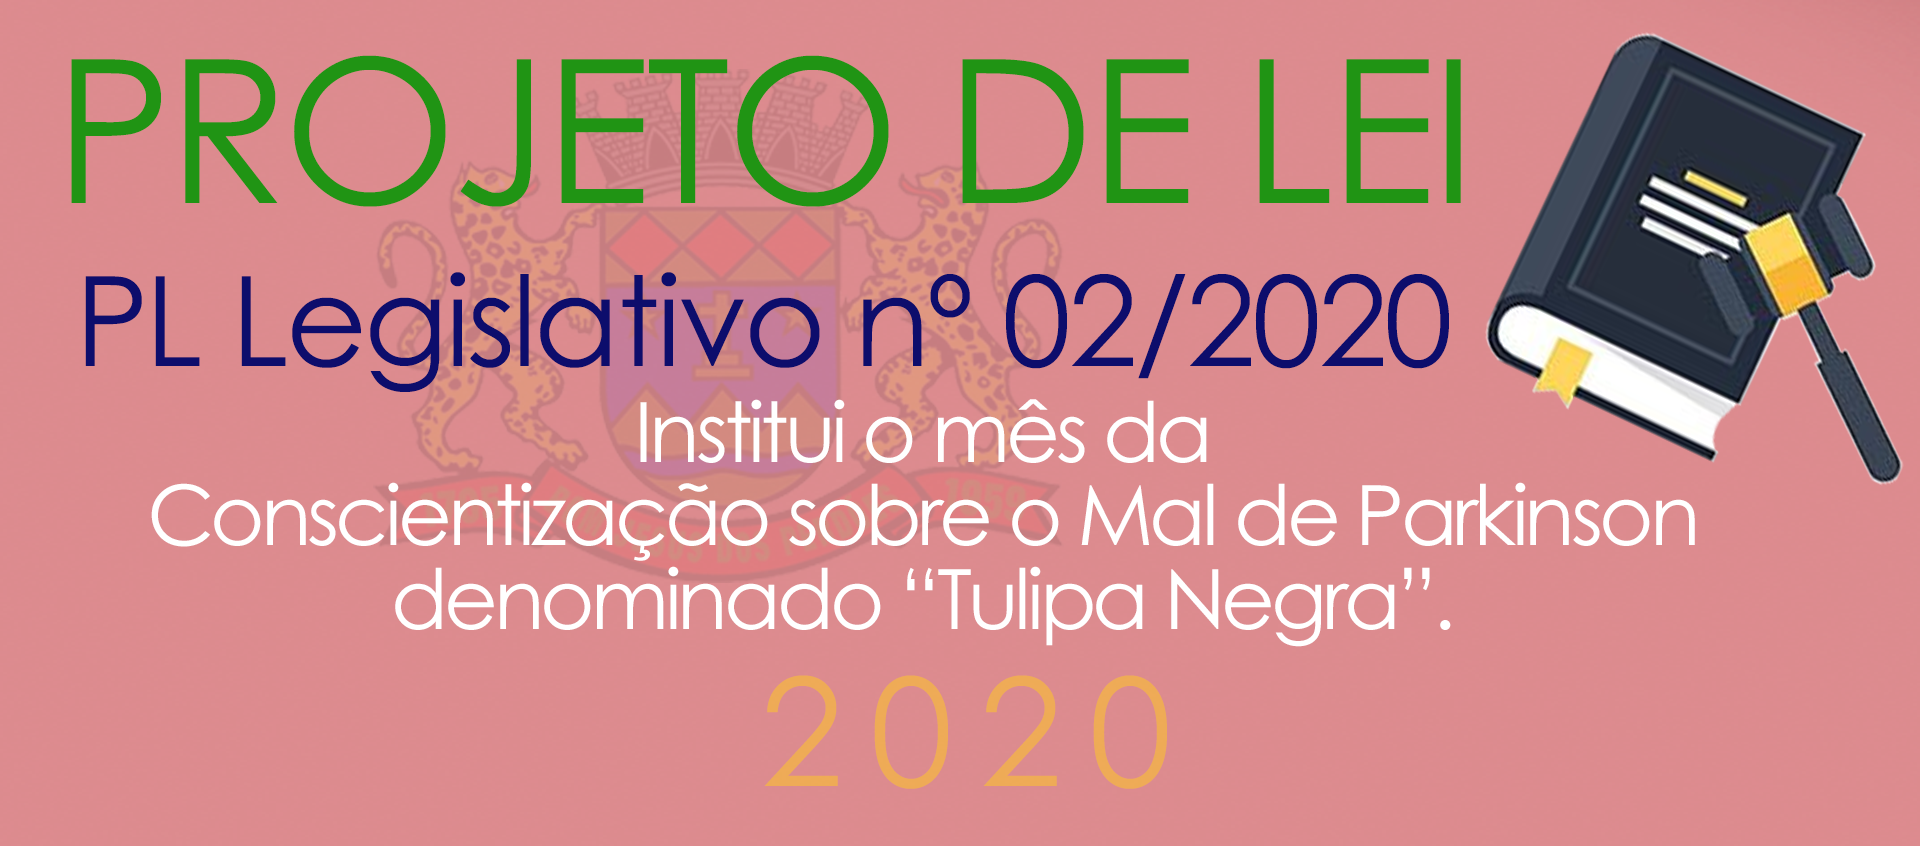 Projeto de Lei Legislativa nº 02/2020